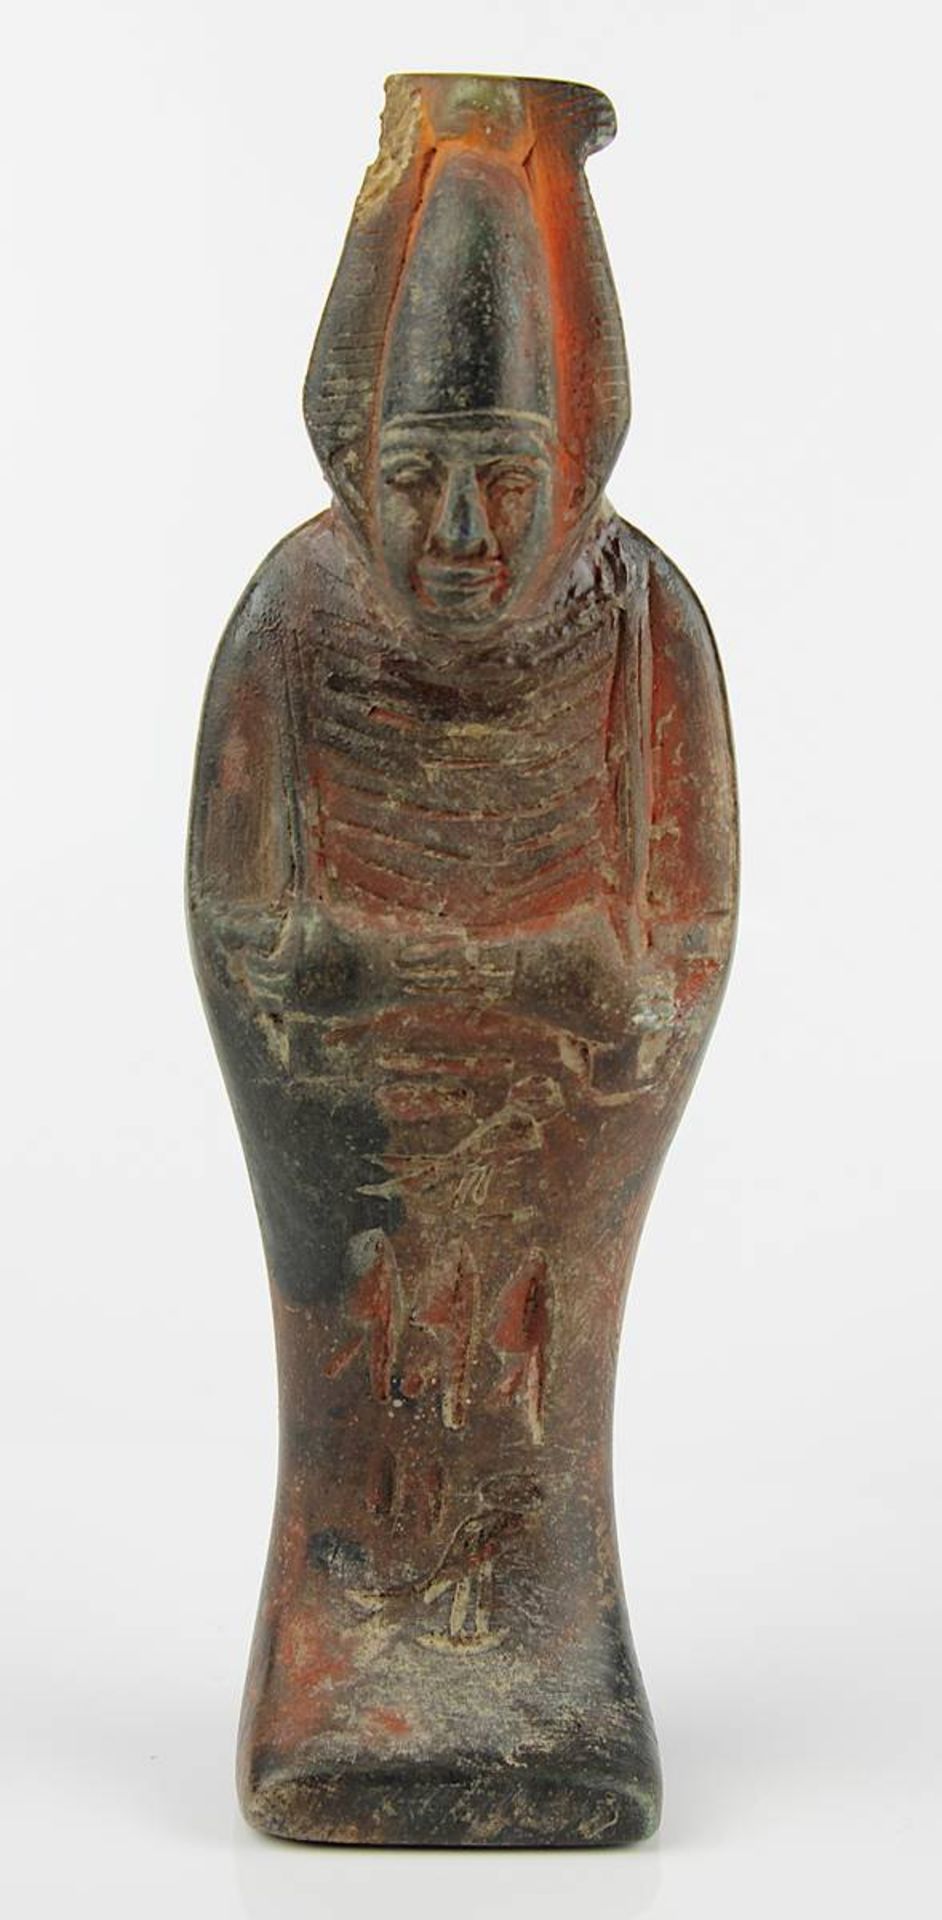 Stehender Osiris, ägyptisch, wohl ptolemäisches Ägypten der Spätphase, 26-31 Dynastie, Ton, roter